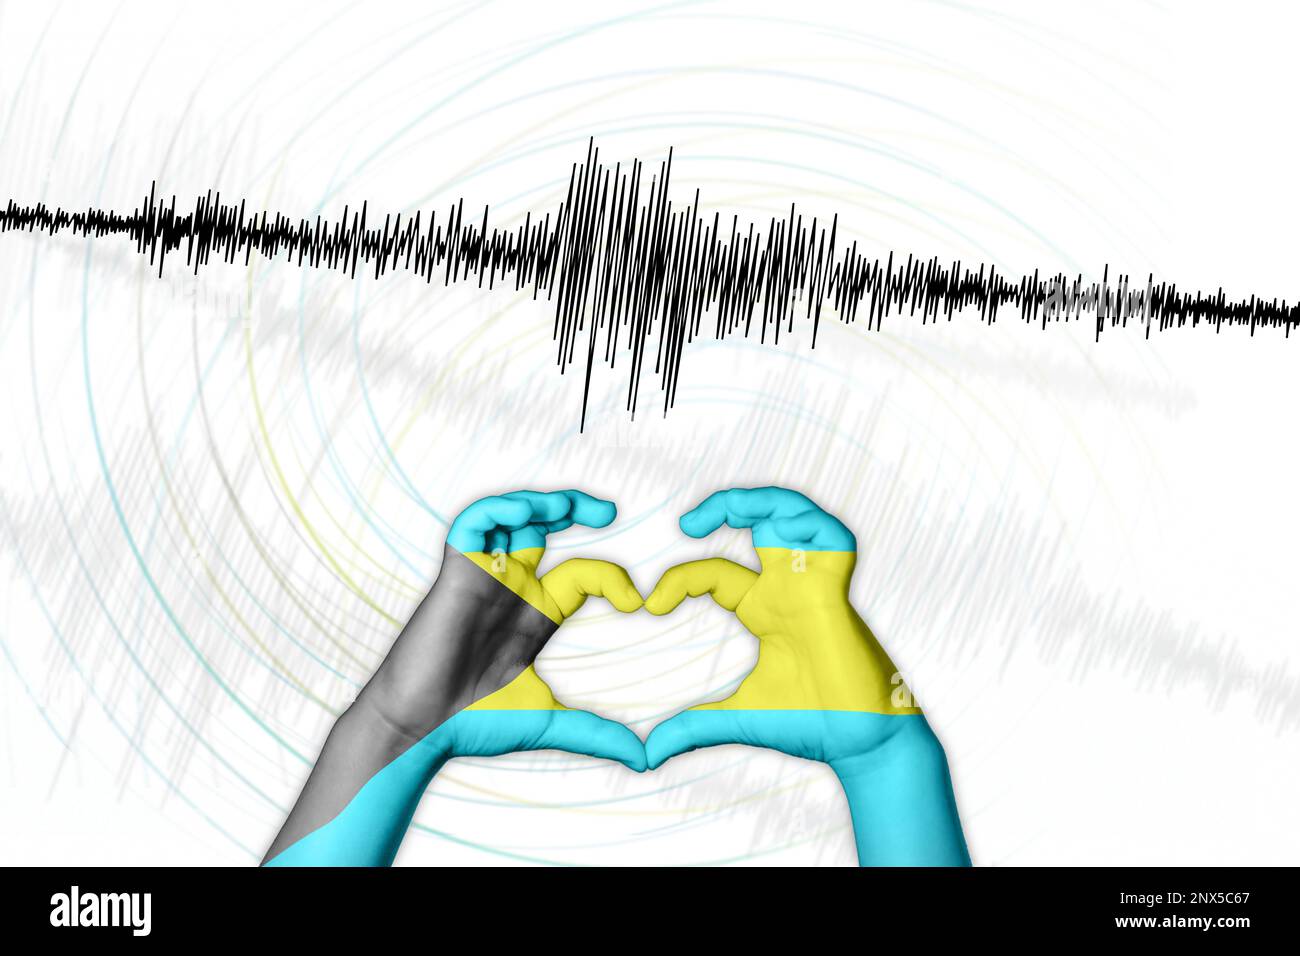 Seismische Aktivität Erdbeben Bahamas Symbol der Heart Richter Scale Stockfoto